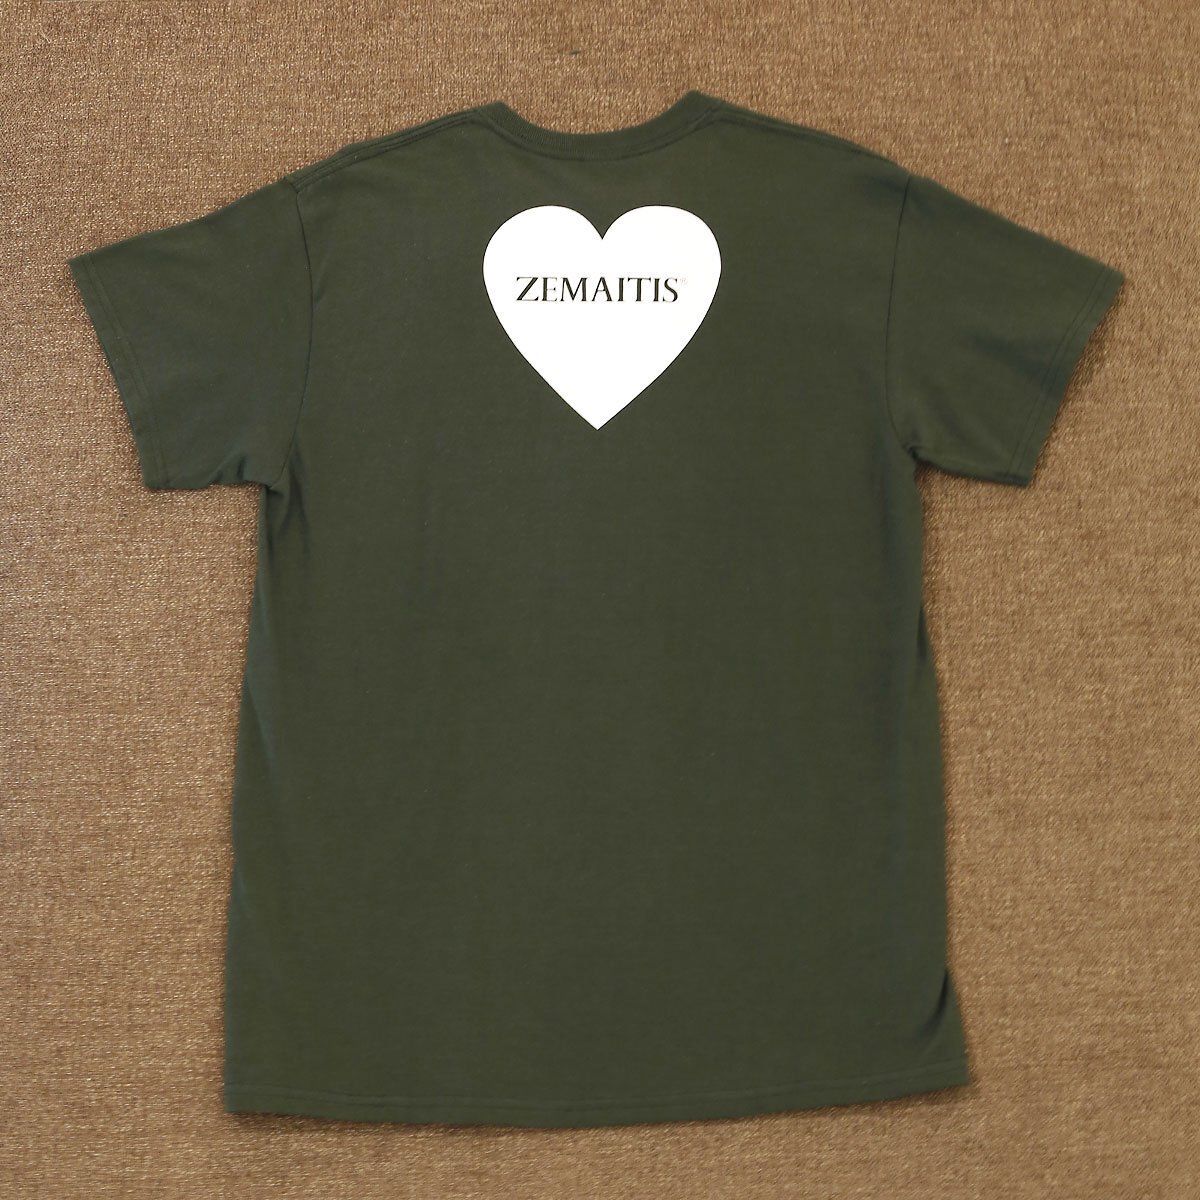 送料無料 新品 ZEMAITIS T-SHIRTS HEART GRN M ゼマイティス 半袖 Tシャツ メンズ Mサイズ グリーン GREEN 緑 コットン100% ロックT ハート_画像2